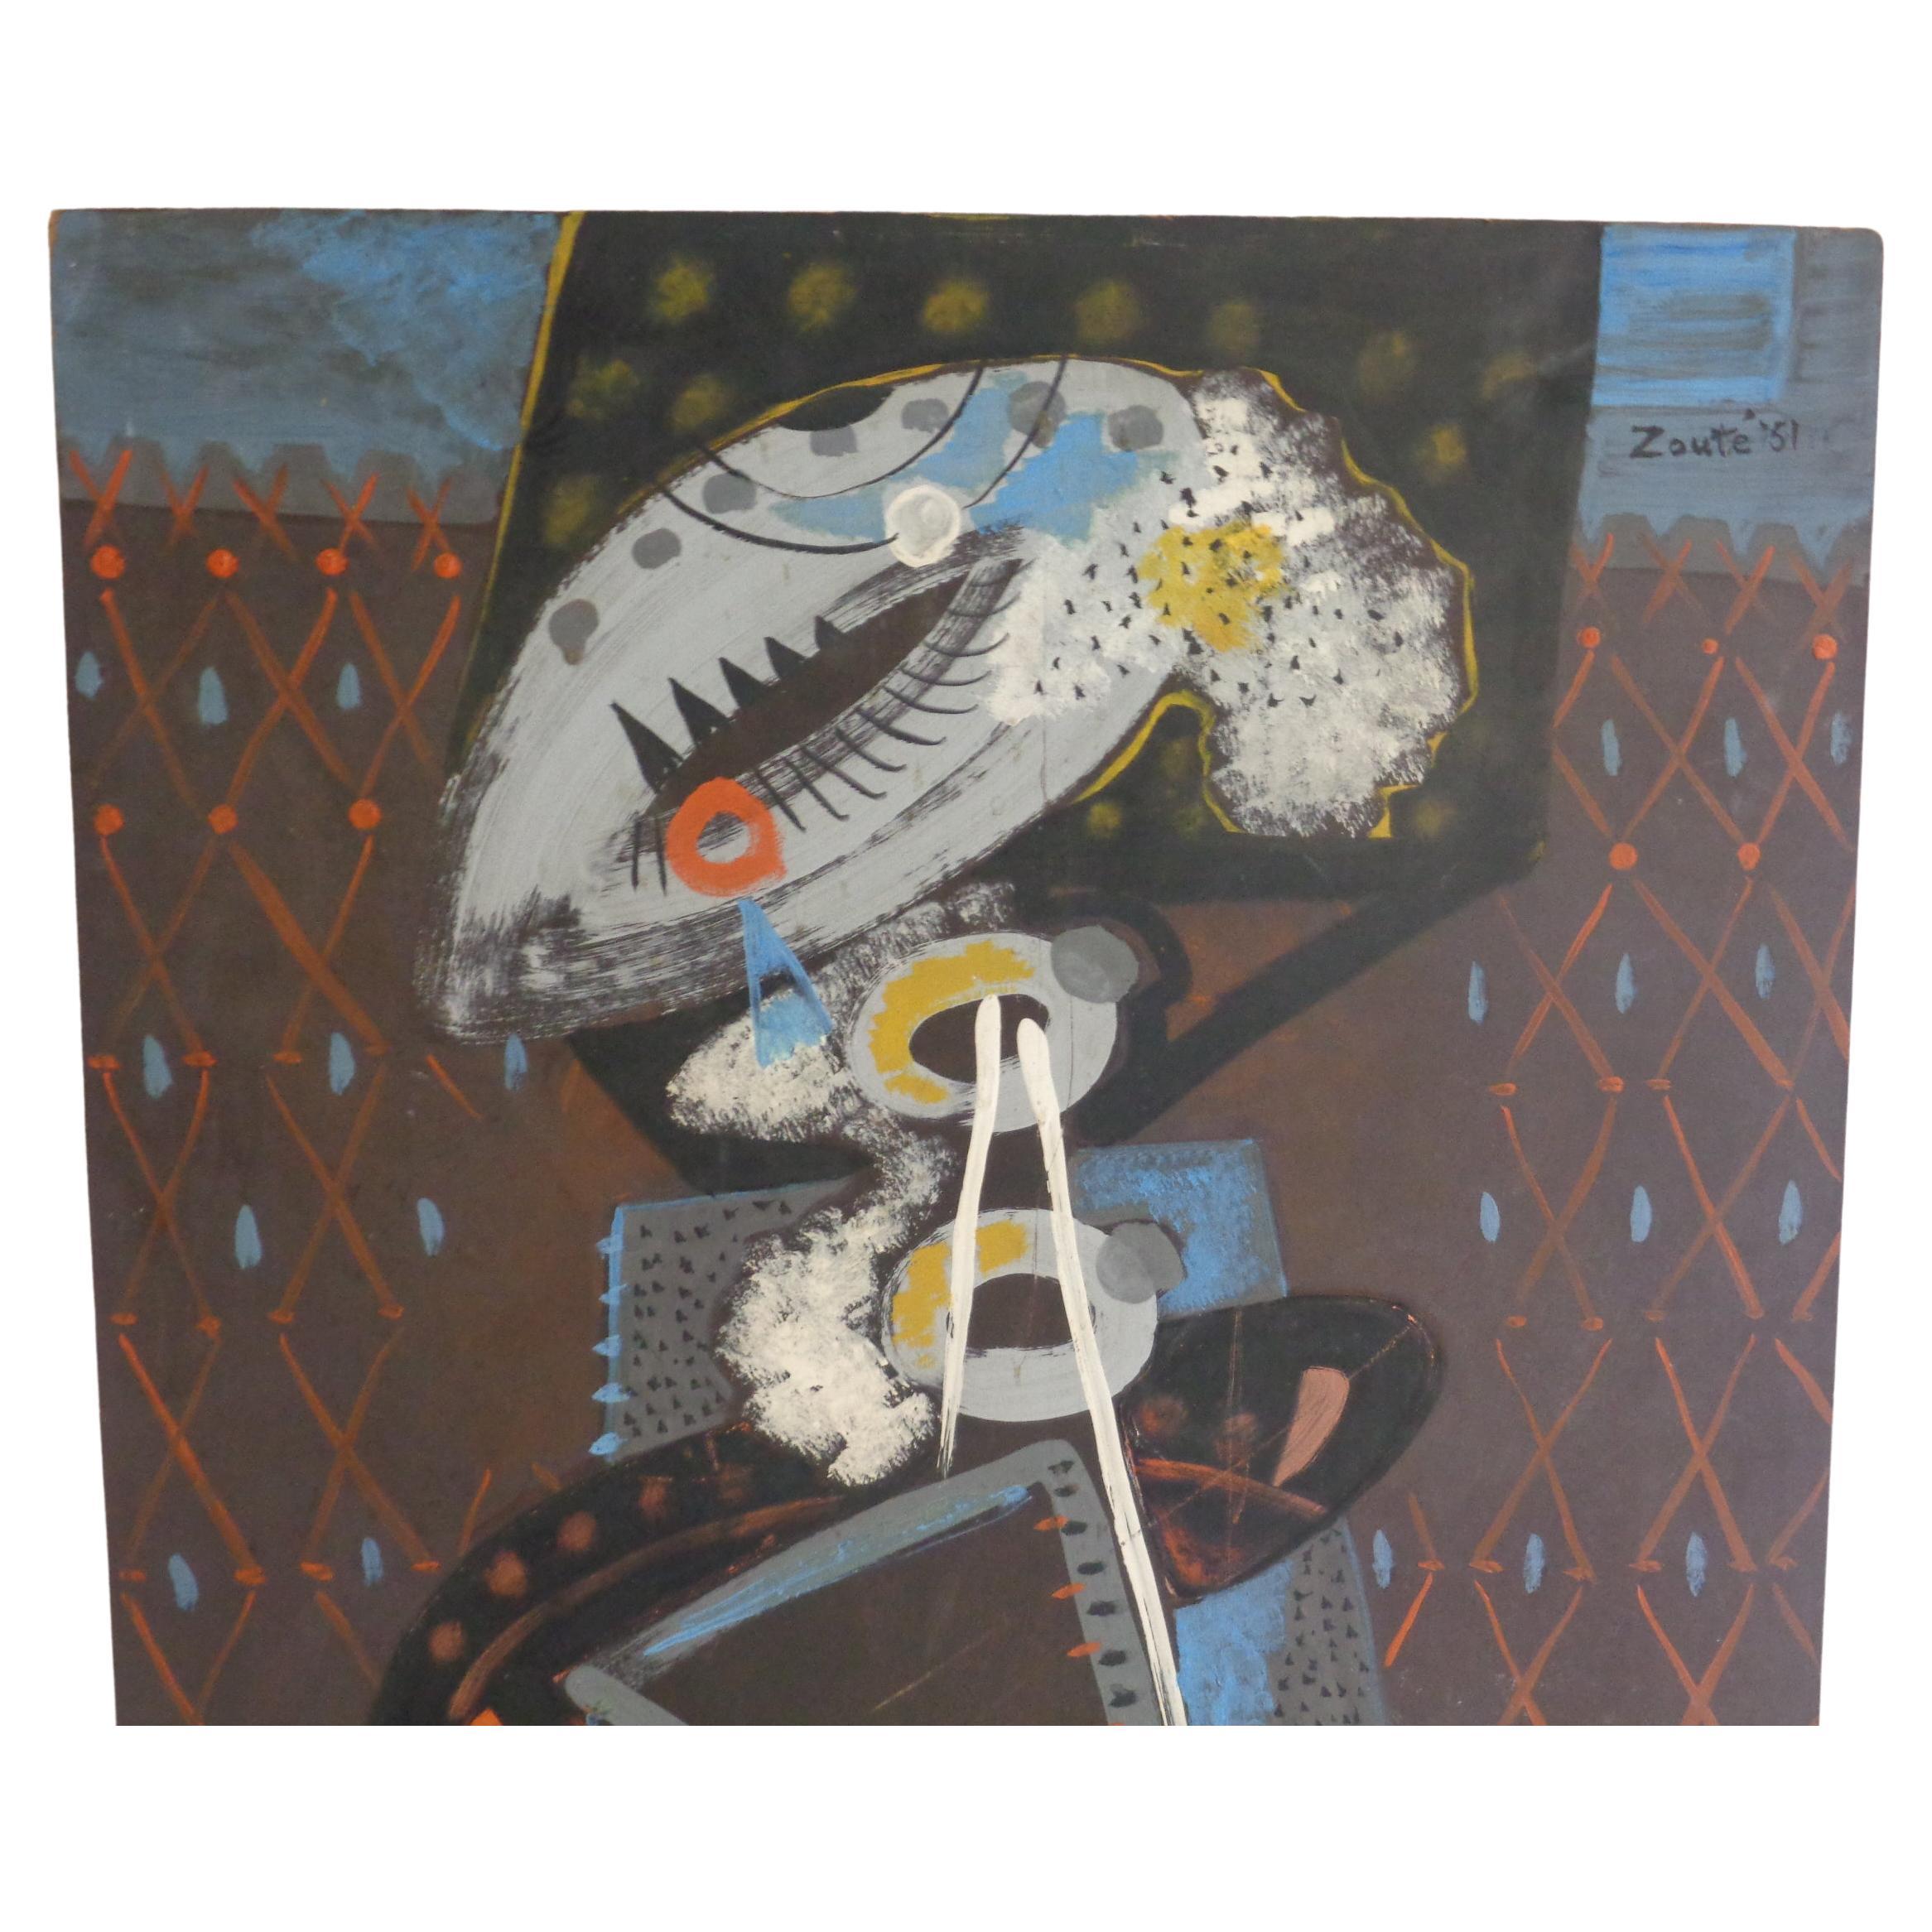 Peinture à l'huile abstraite sur masonite - figure féminine avec de belles couleurs vives ( probablement Thelma - la femme de Zoute ) Leon Salter ( 1903 - 1976, North Rose NY ) alias Zoute - artiste peintre autodidacte. Il a fait partie intégrante